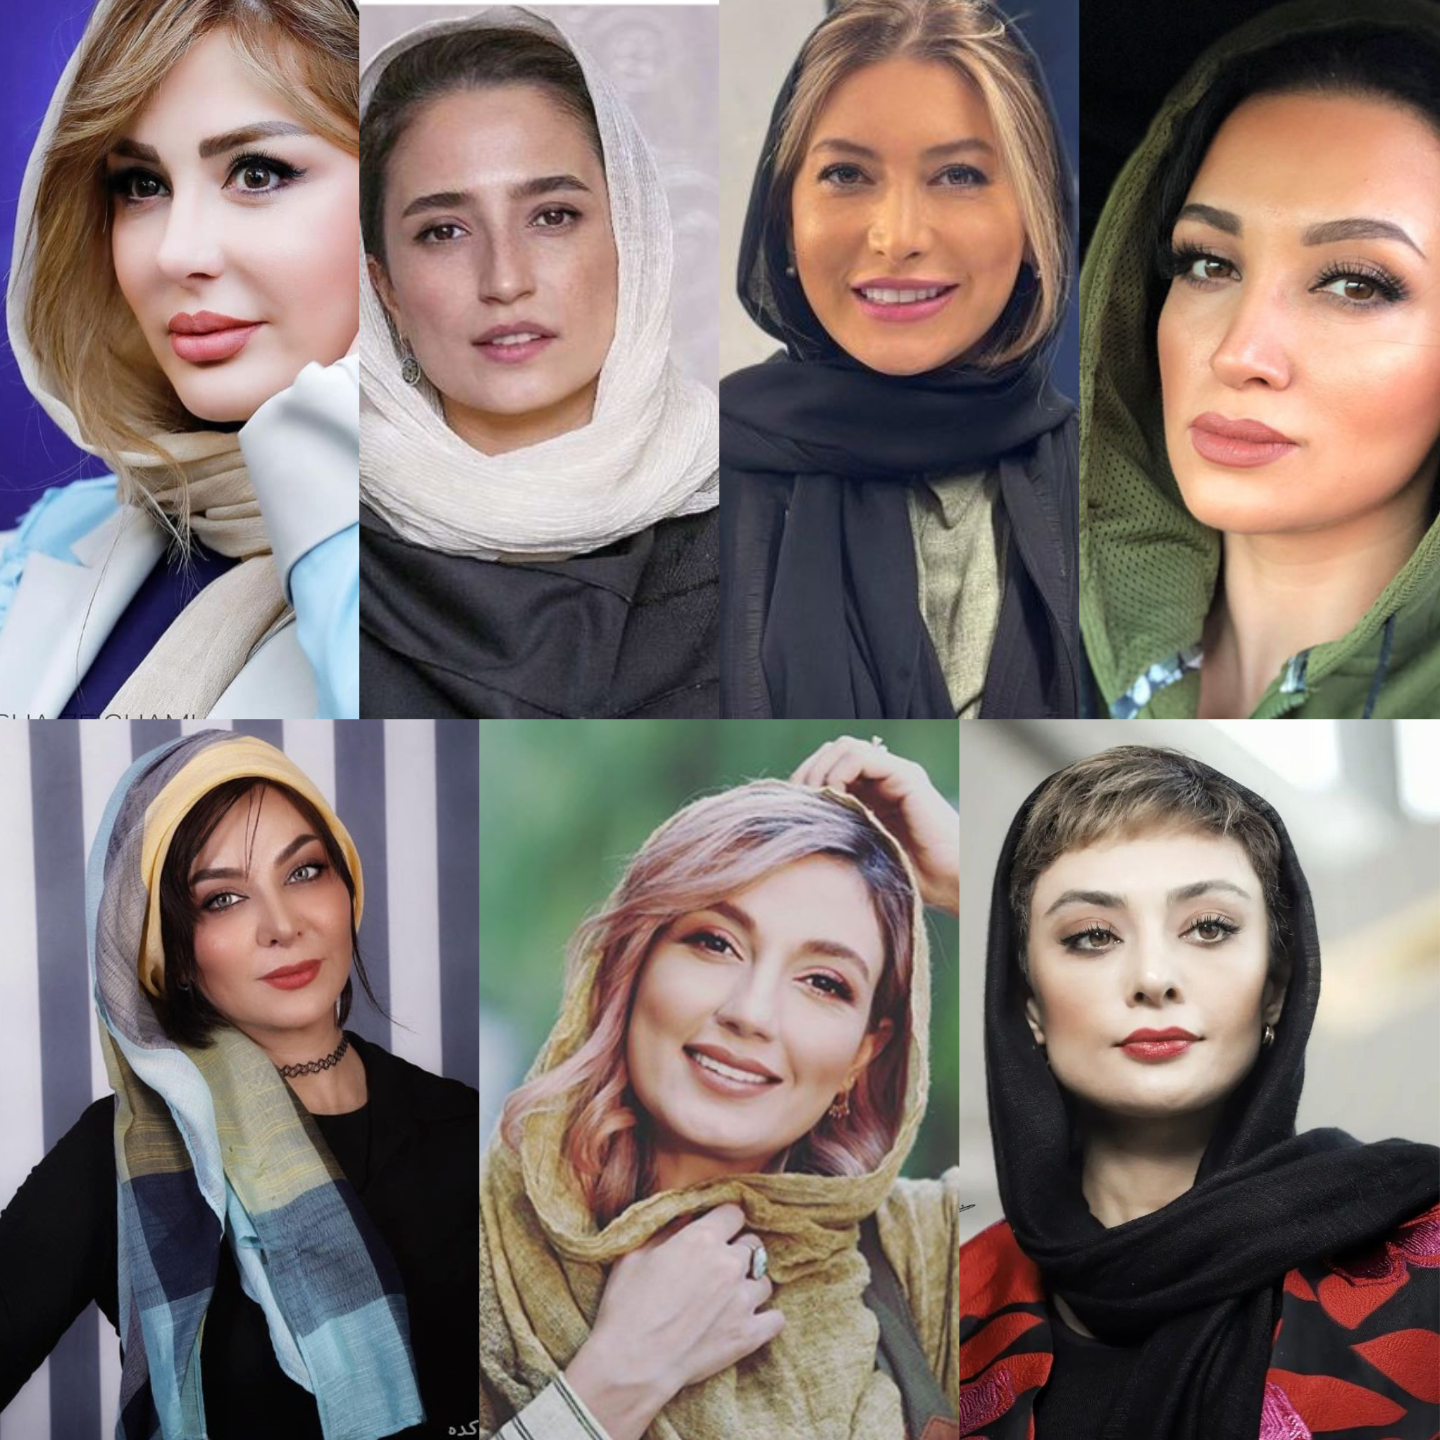 اسم فرزندان بازیگران ایرانی / عکس های جالب از دوران بارداری بازیگران